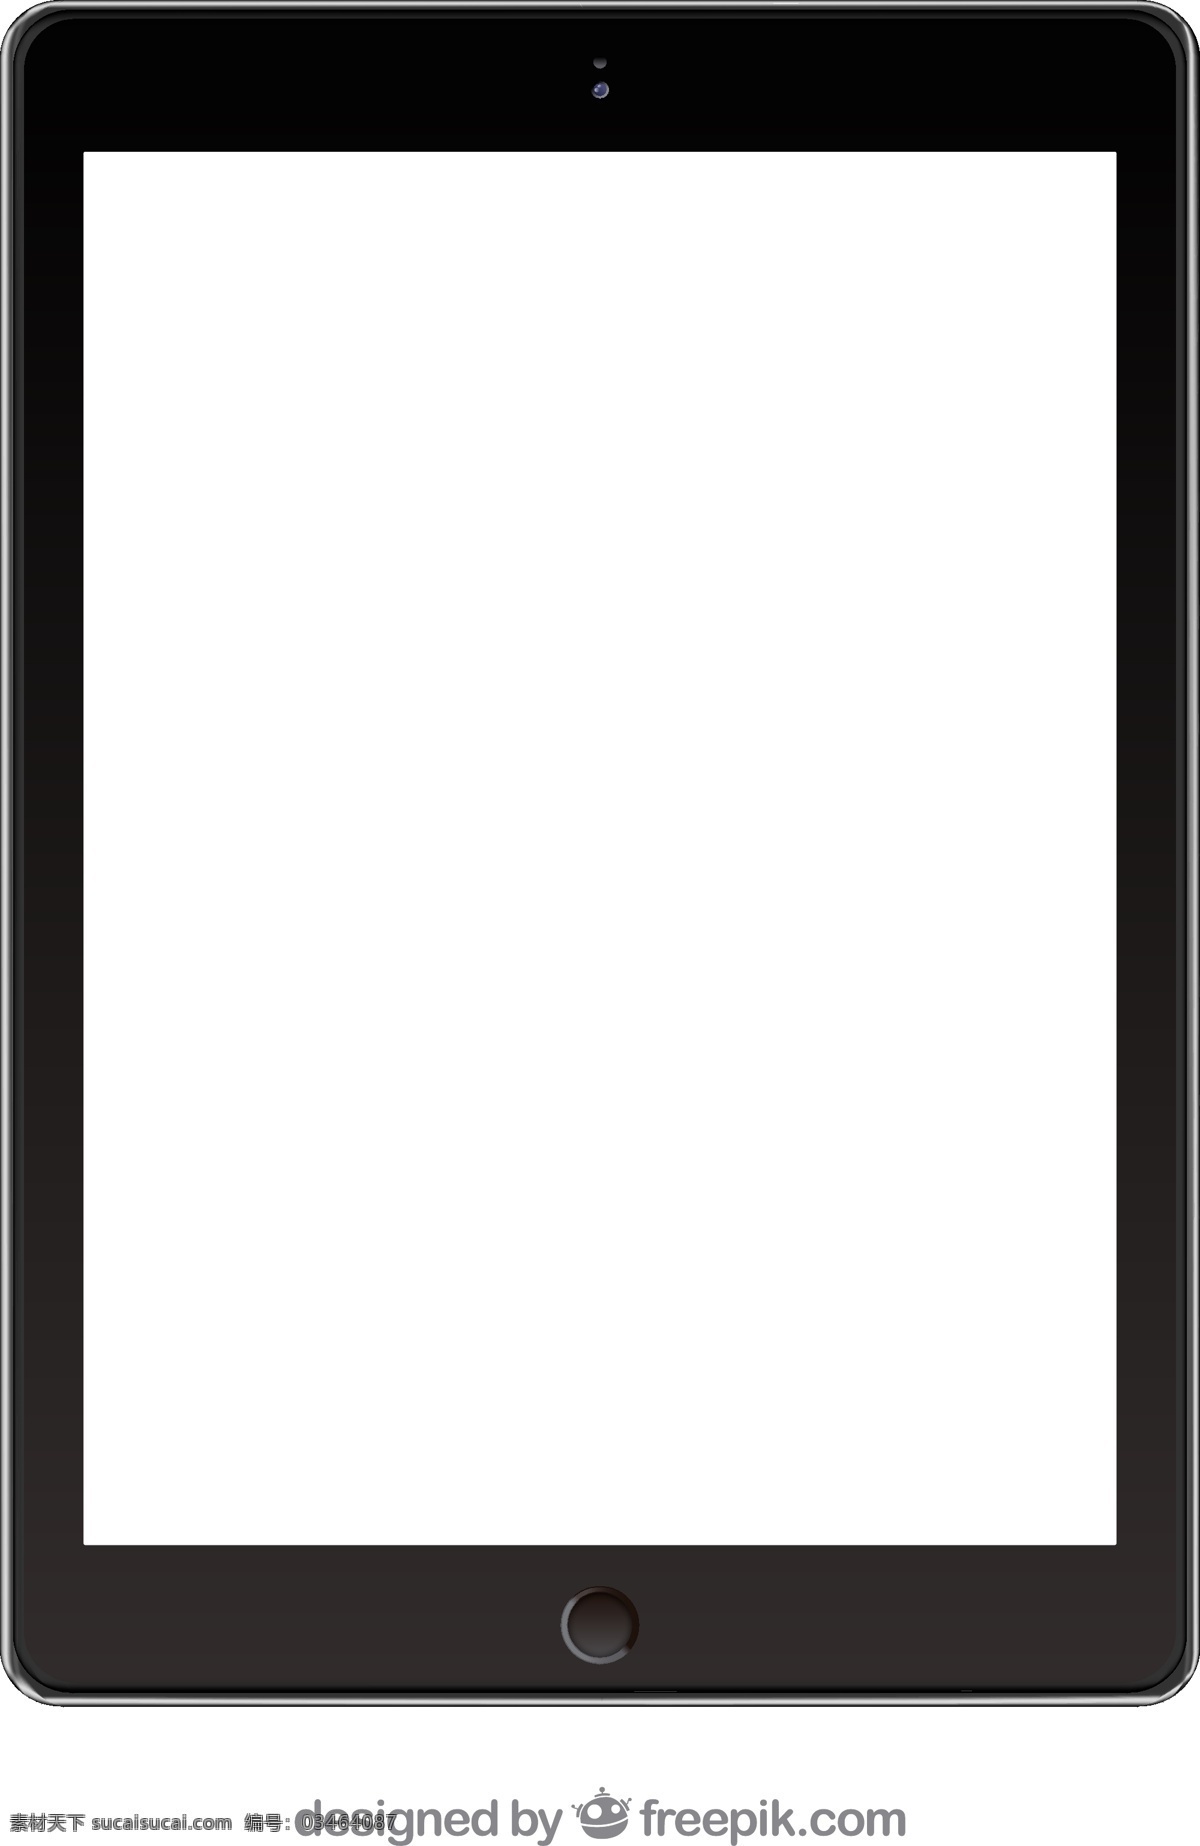 黑色 平板电脑 样机 技术 ipad 数码 屏幕 电子 设备 图标 高清 源文件